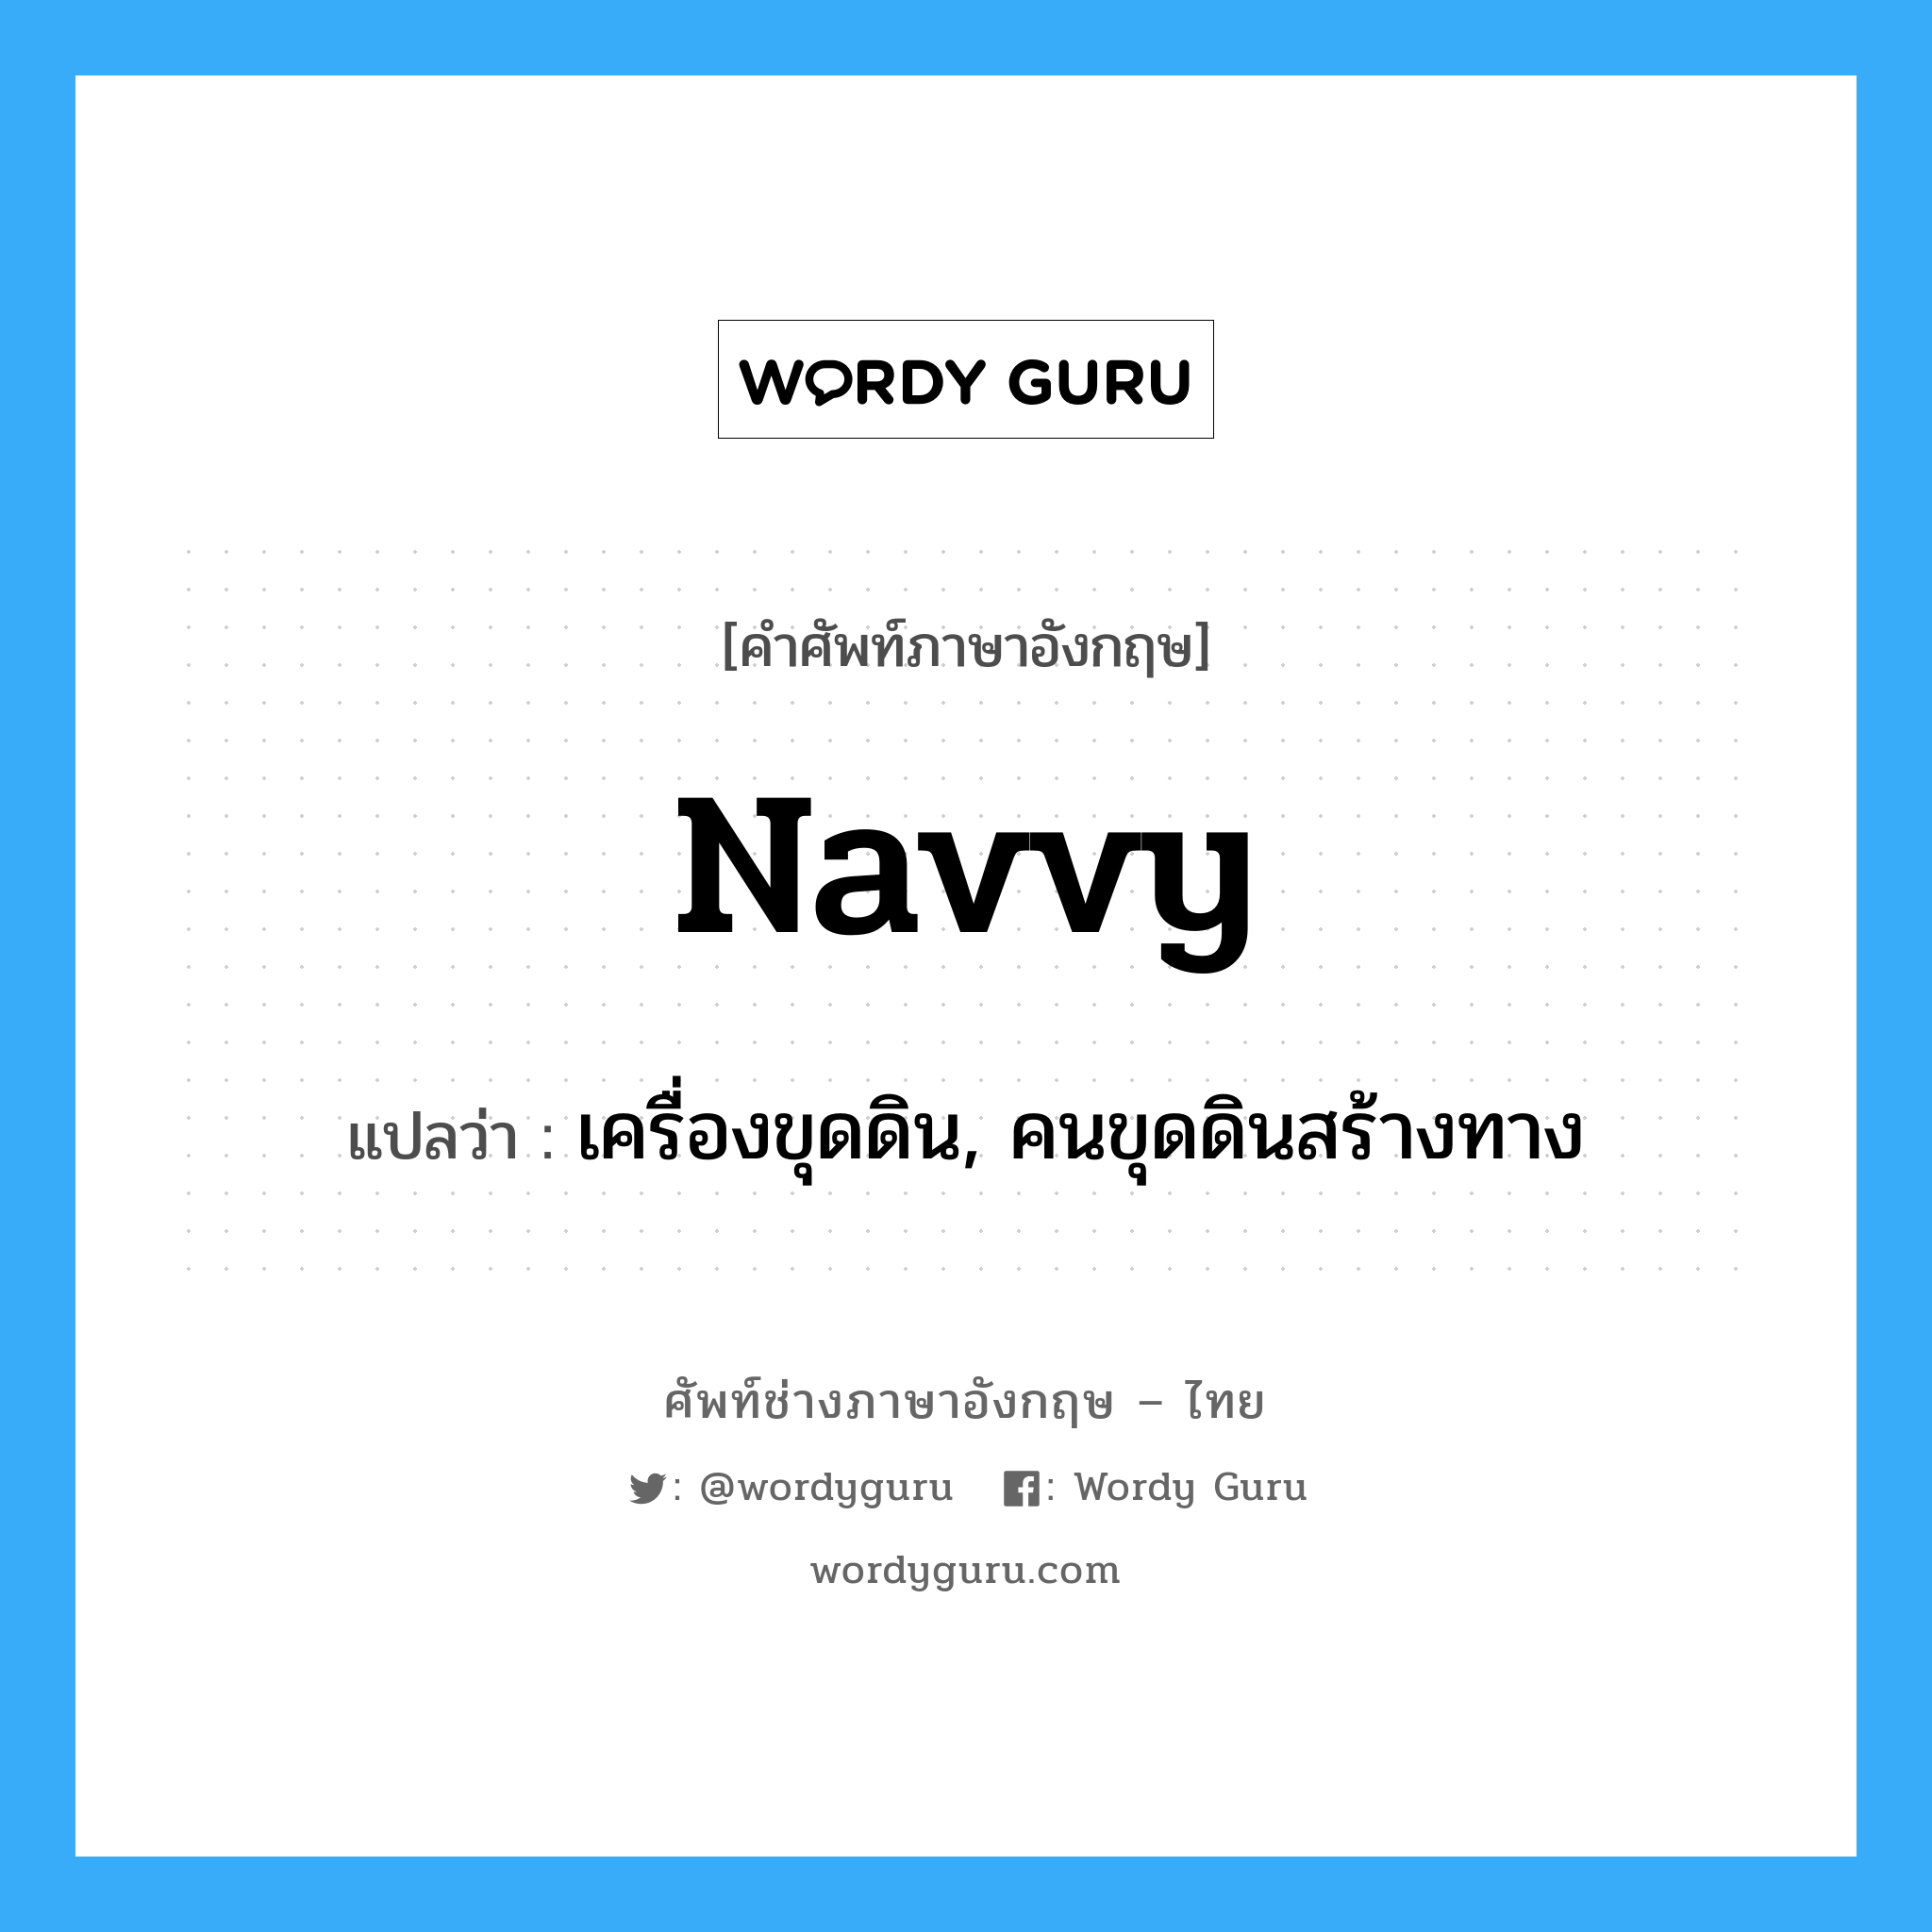 navvy แปลว่า?, คำศัพท์ช่างภาษาอังกฤษ - ไทย navvy คำศัพท์ภาษาอังกฤษ navvy แปลว่า เครื่องขุดดิน, คนขุดดินสร้างทาง